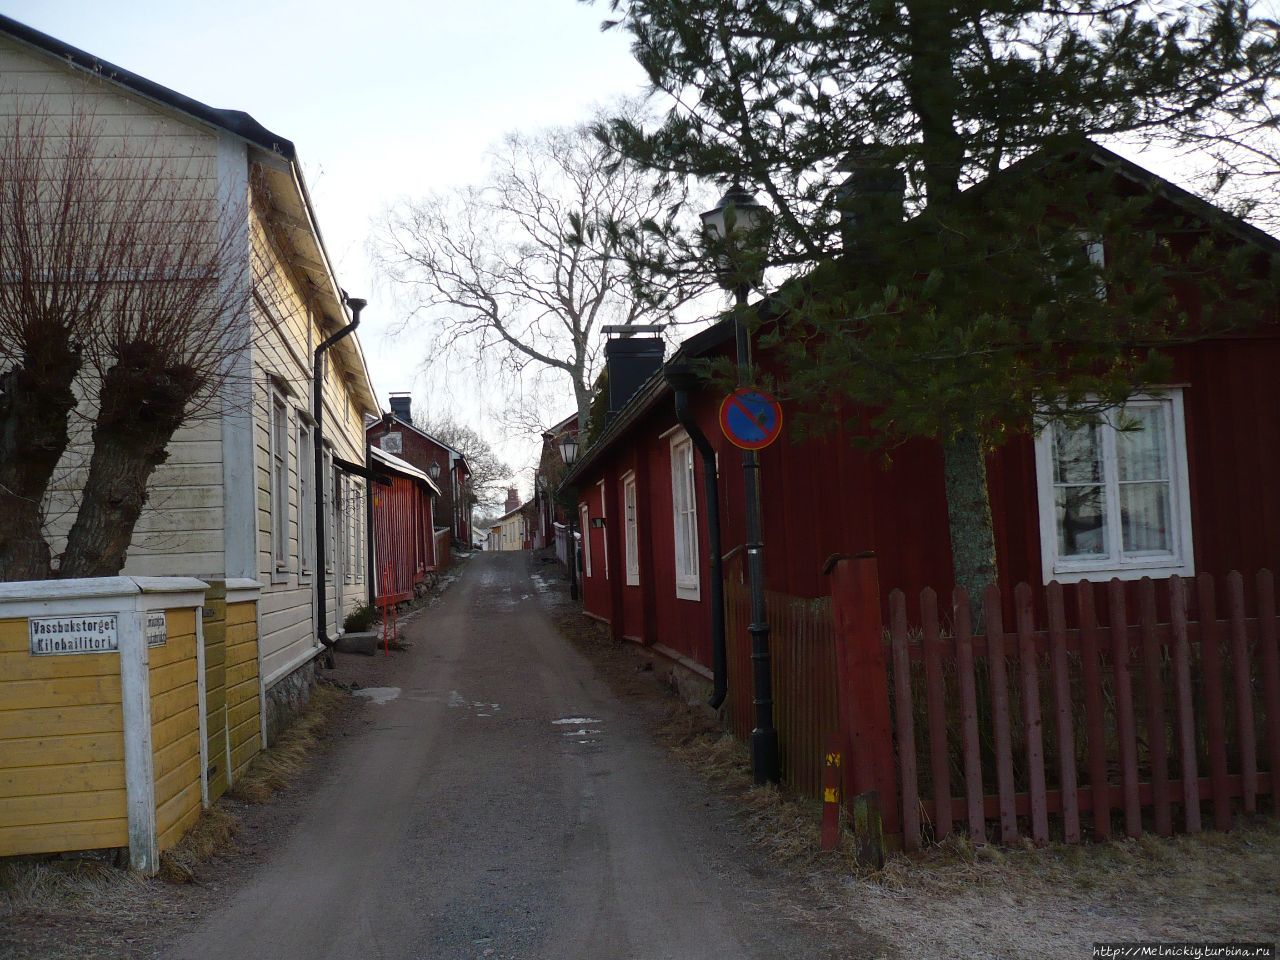 Город с четырьмя названиями Расеборг (|Экеняс), Финляндия